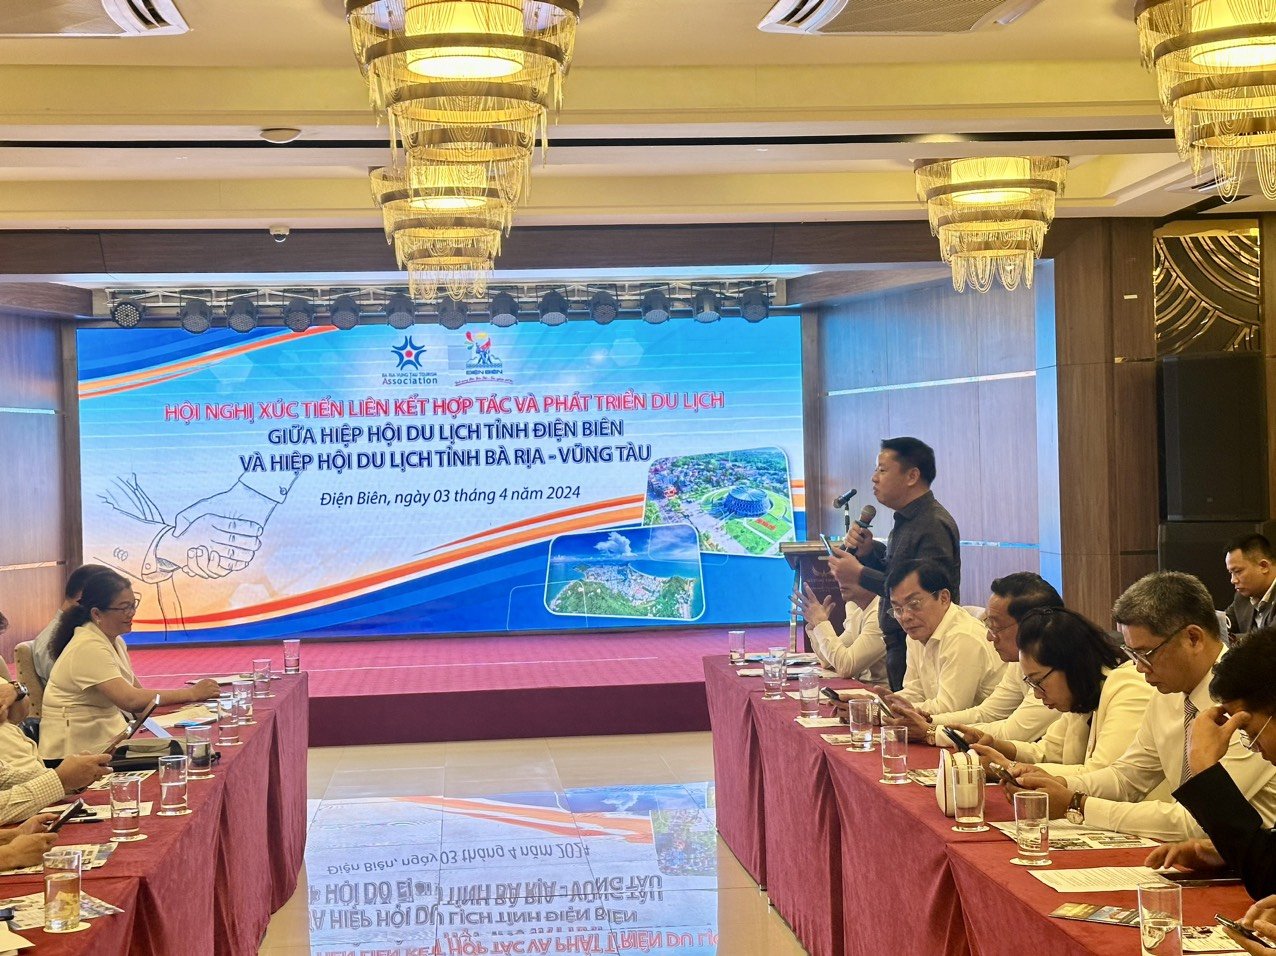 Quang cảnh hội nghị xúc tiến liên kết hợp tác phát triển du lịch giữa HHDL Bà Rịa-Vũng Tàu và Điện Biên.